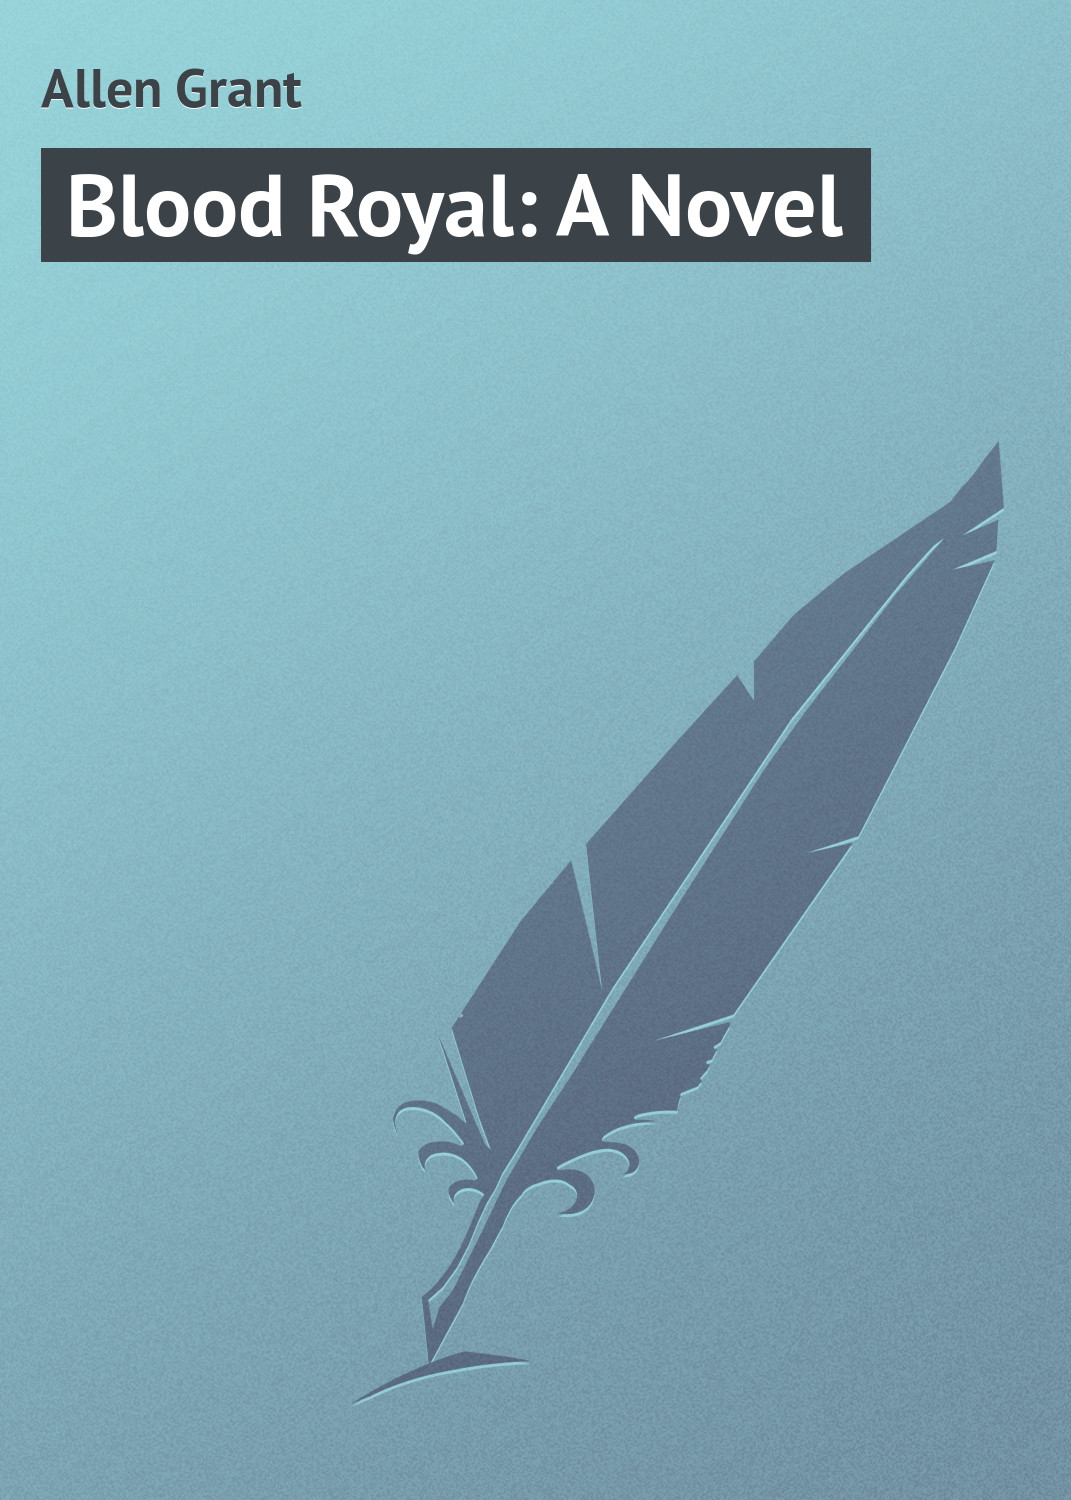 Книга Blood Royal: A Novel из серии , созданная Grant Allen, может относится к жанру Зарубежная классика. Стоимость электронной книги Blood Royal: A Novel с идентификатором 23164979 составляет 5.99 руб.